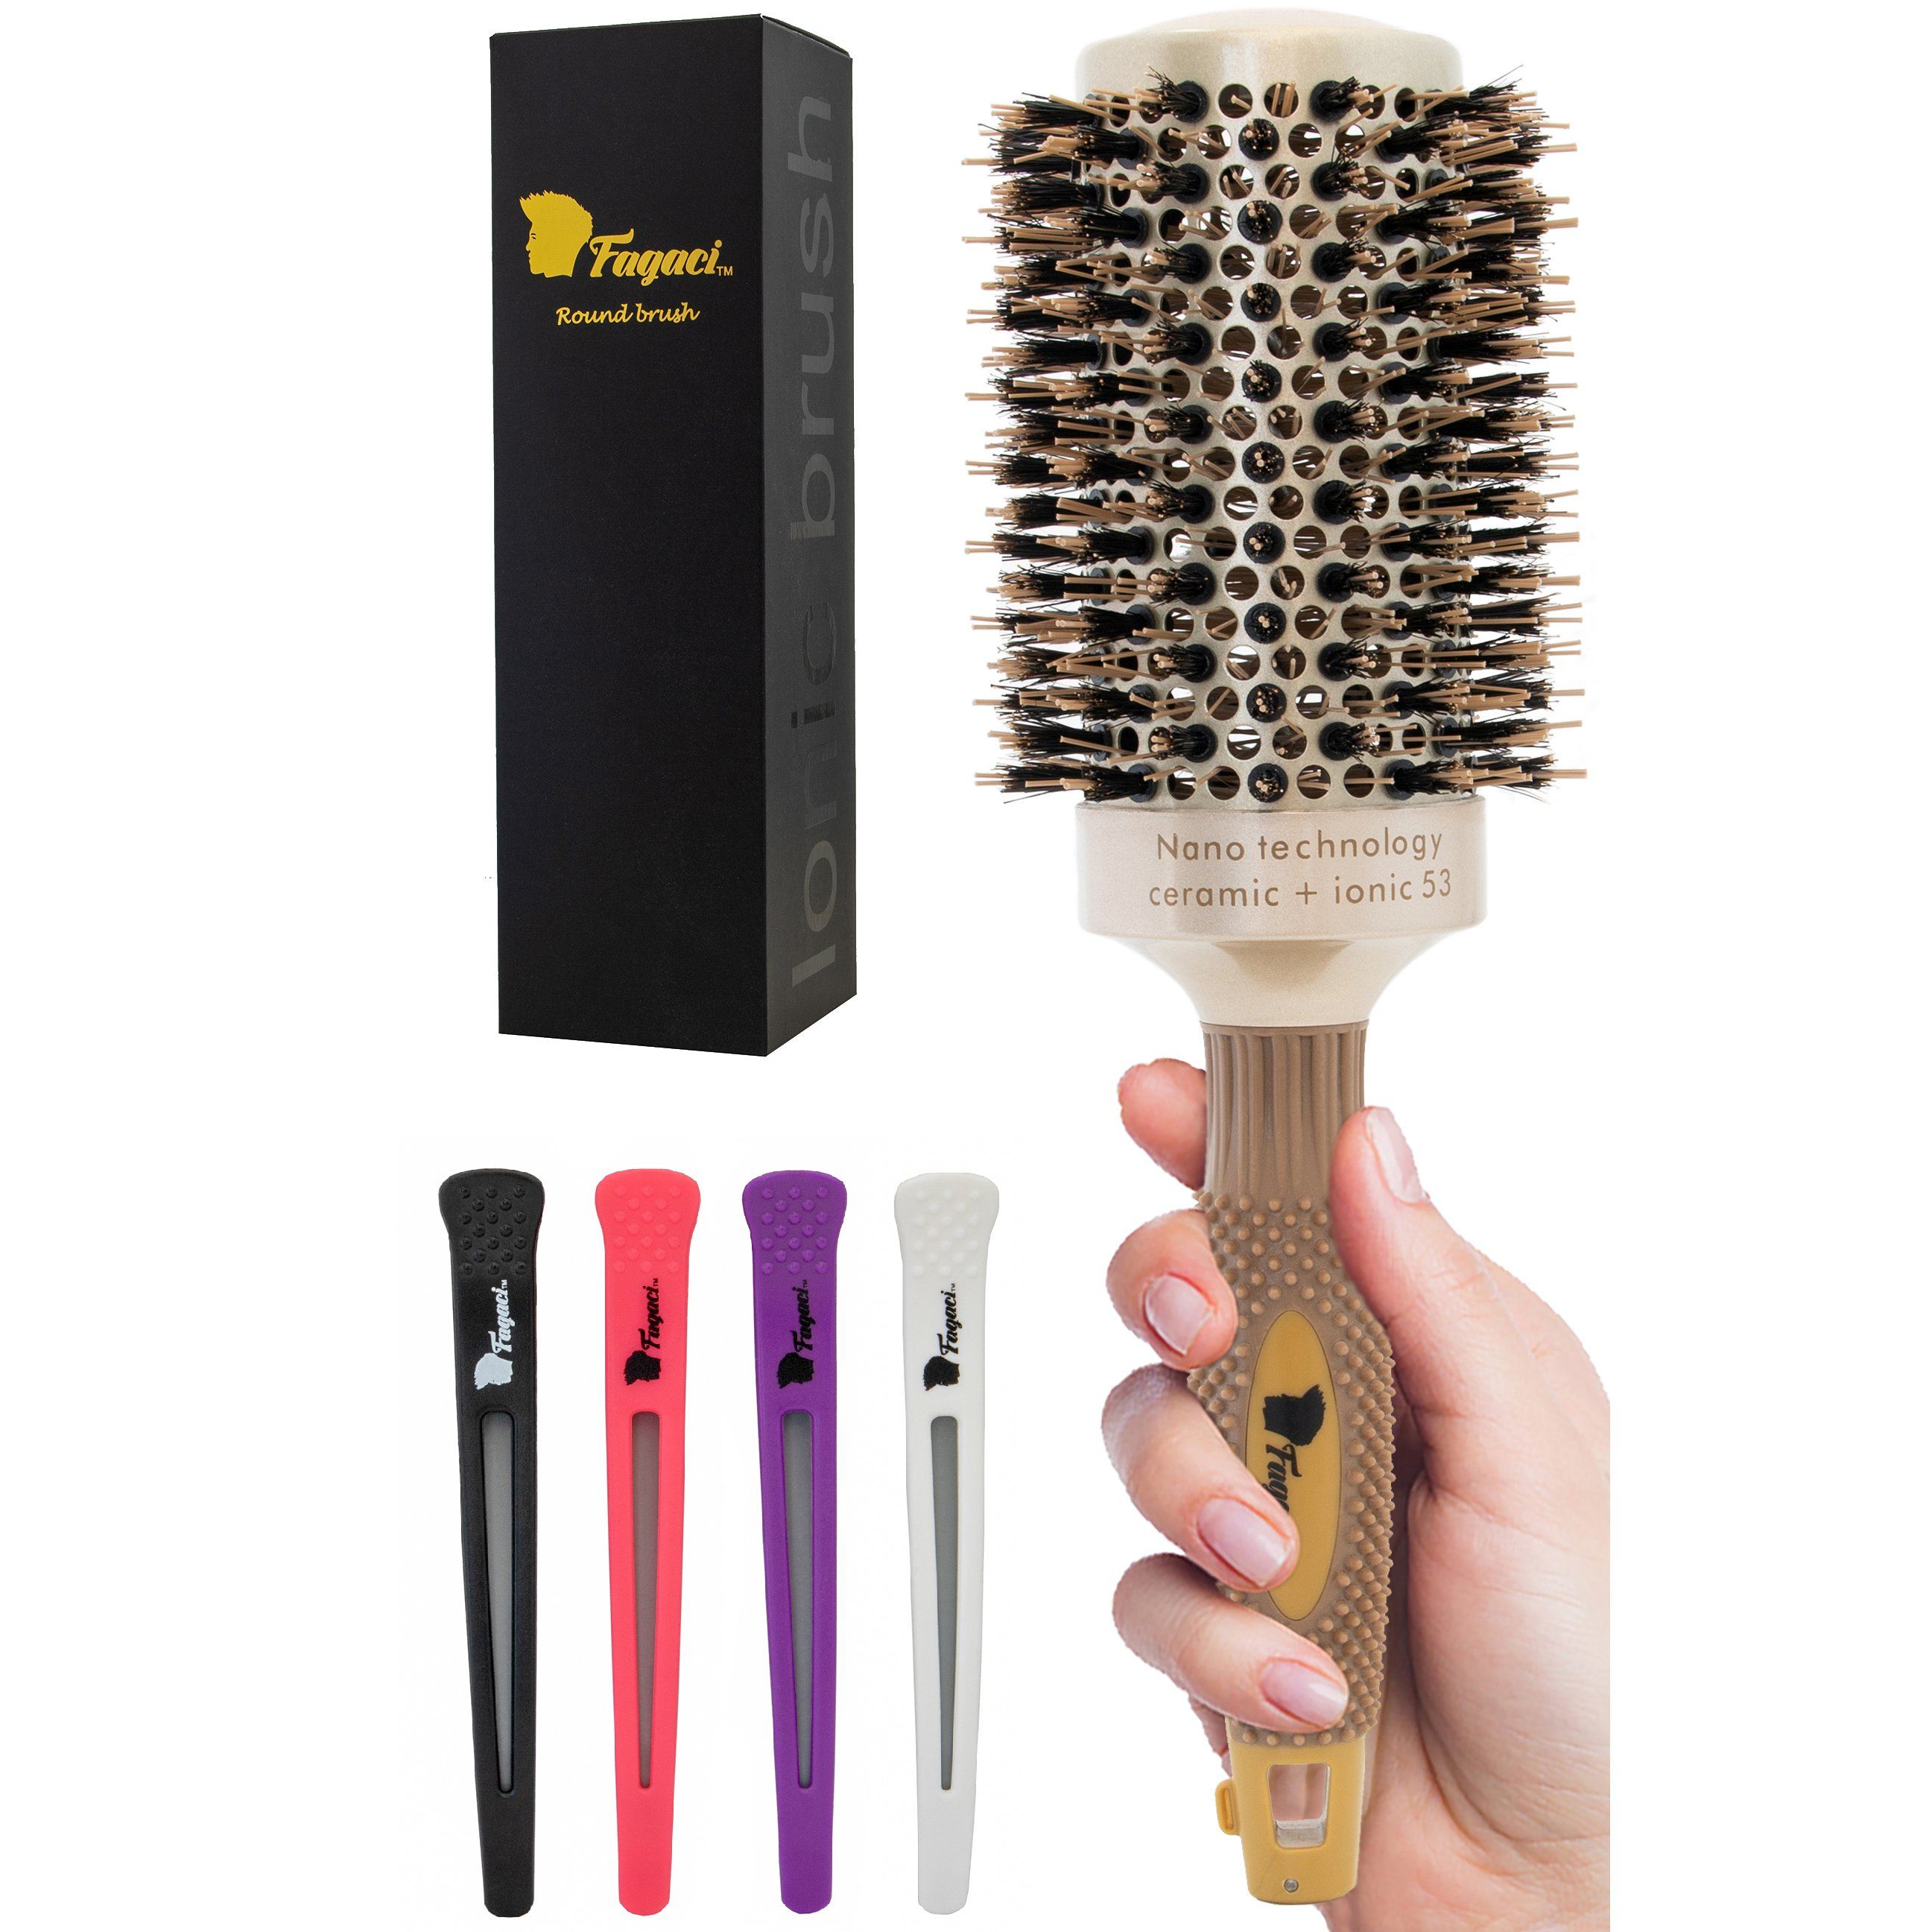 Round brush. Nano Technology Ceramic Ionic брашинг. Max Pro Ceramic Round hair Dryer Brush. Brush for coarse hair.